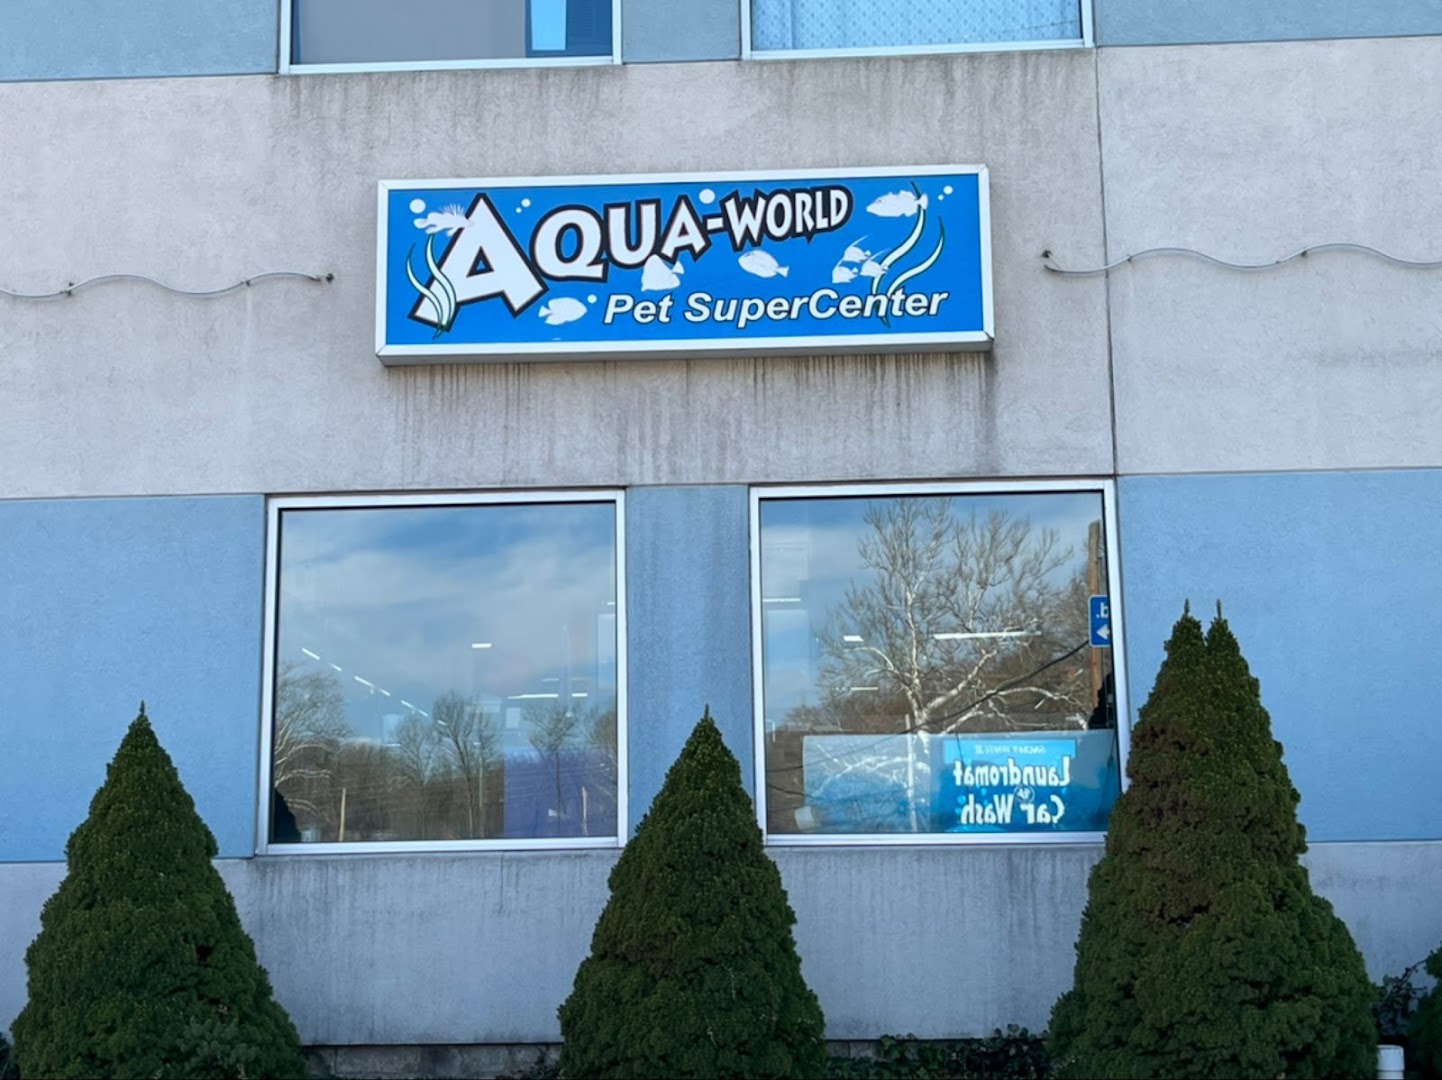 Aqua World Pet Super Center